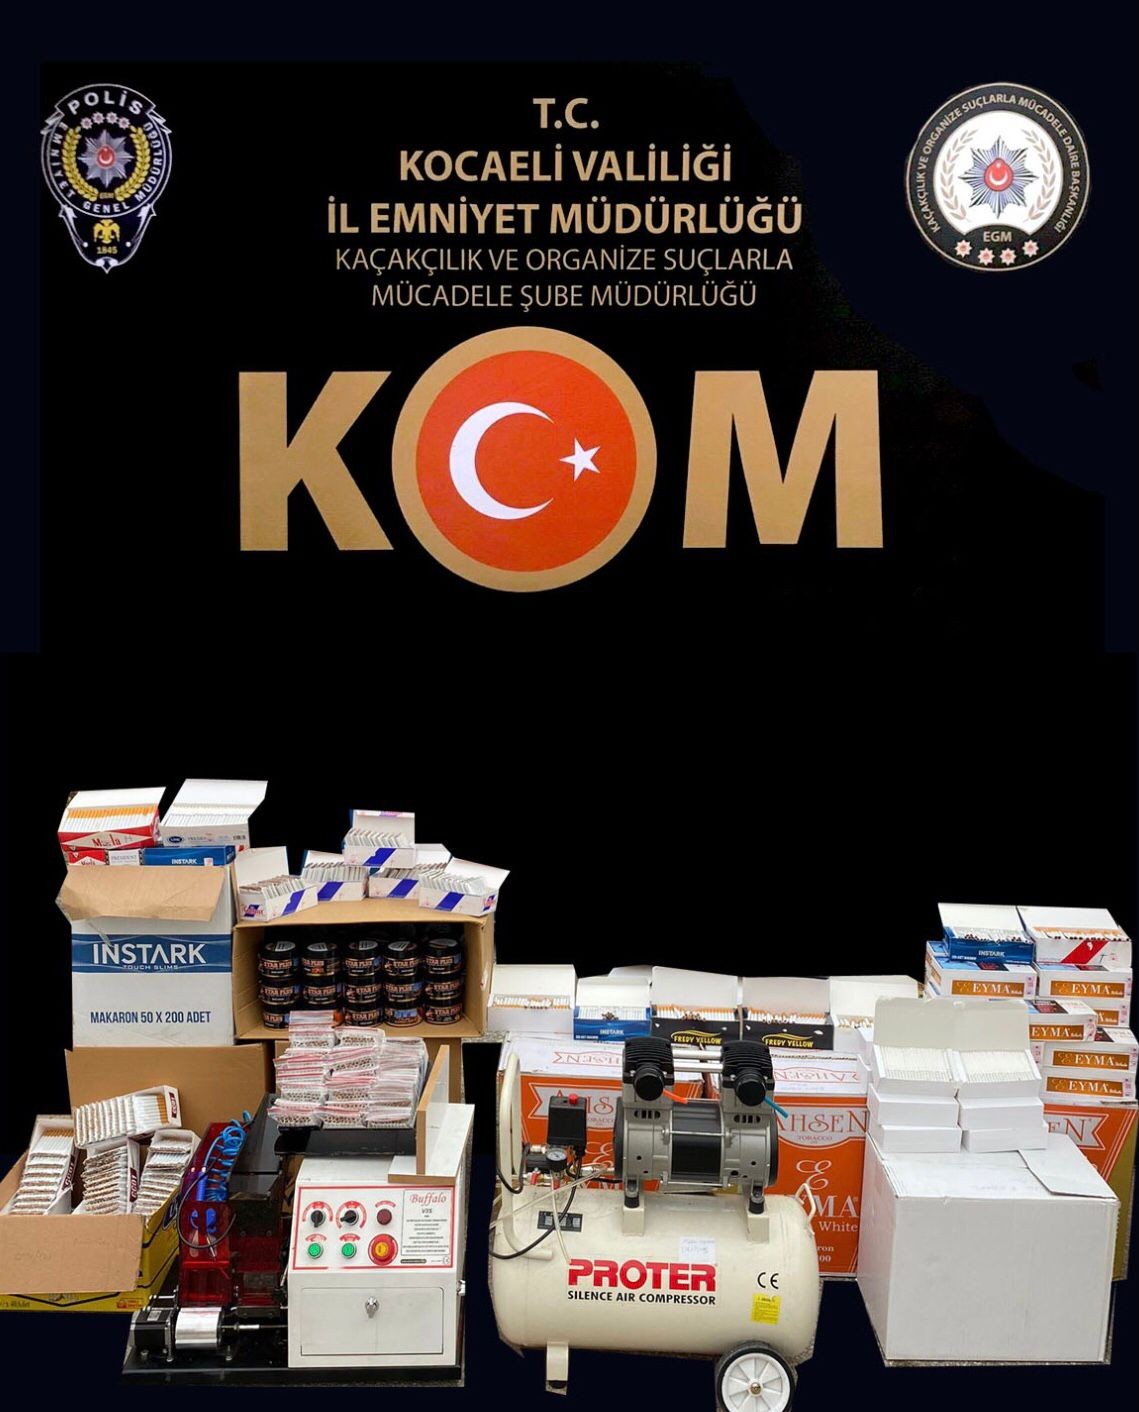 Kocaeli’de kaçak tütün operasyonu: 6 işletmeci gözaltına alındı #kocaeli